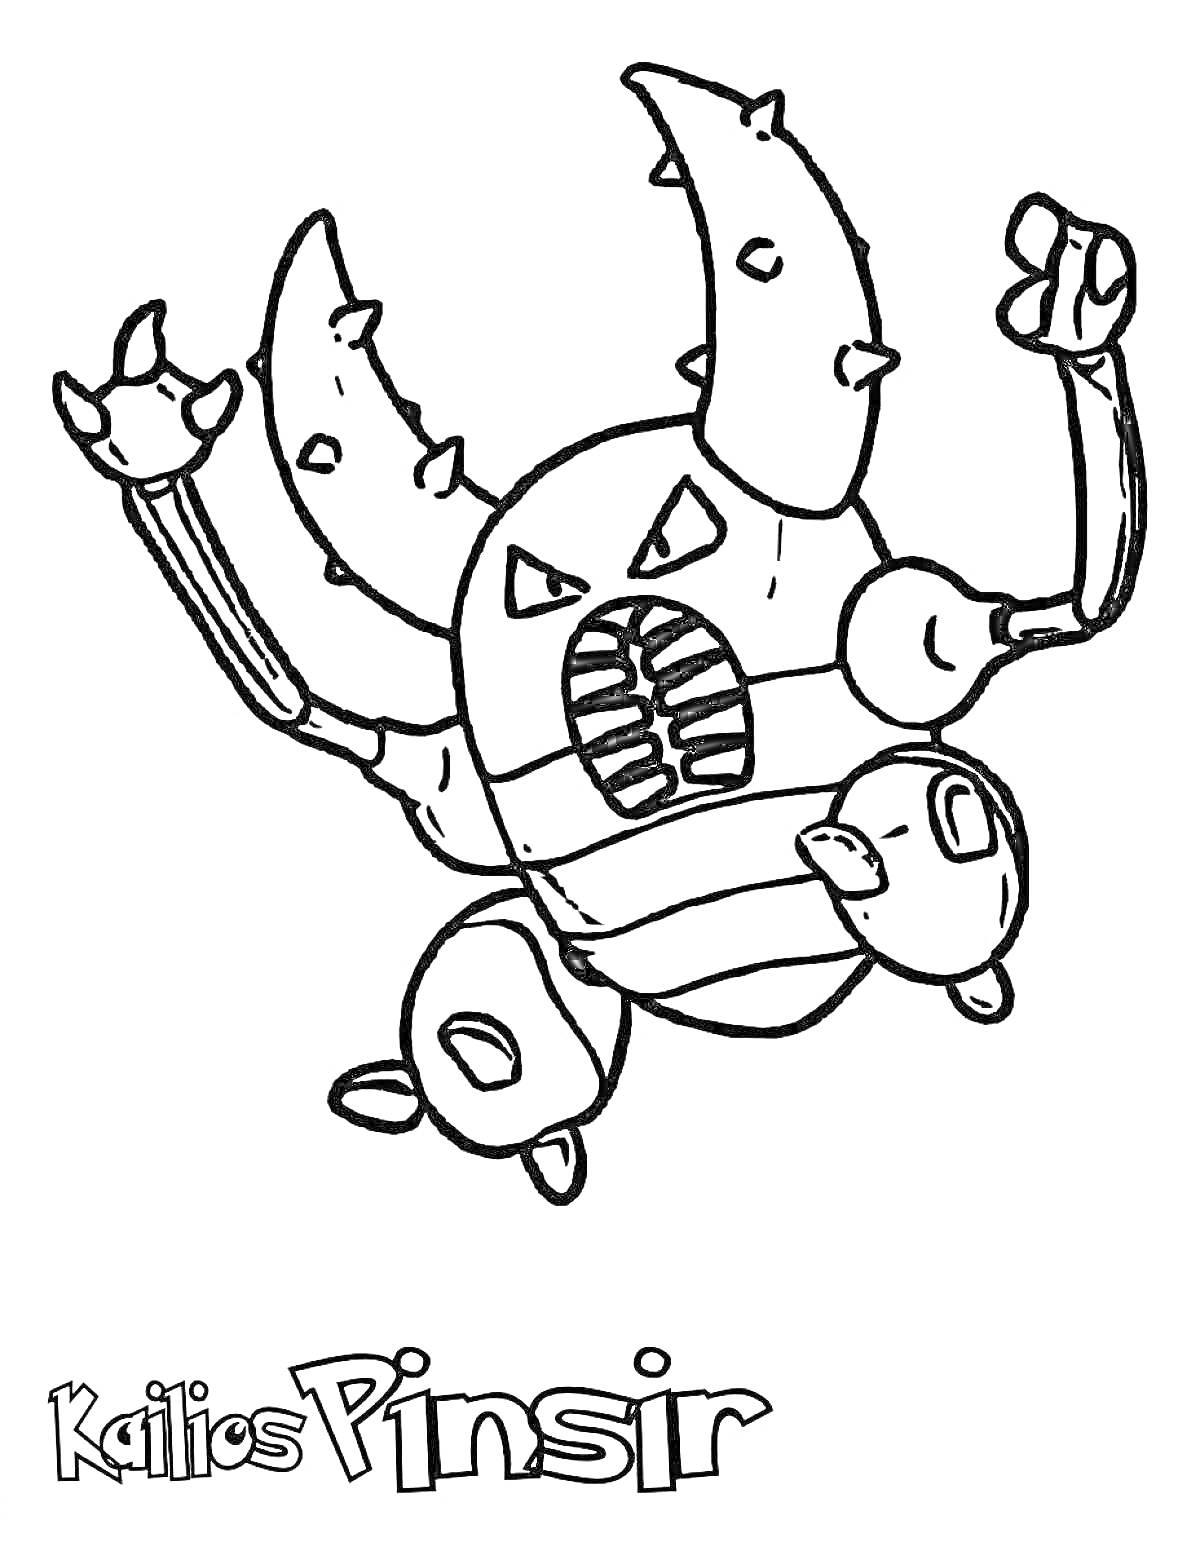 Покемон Пинсир с большими клешнями и рожками, написано 